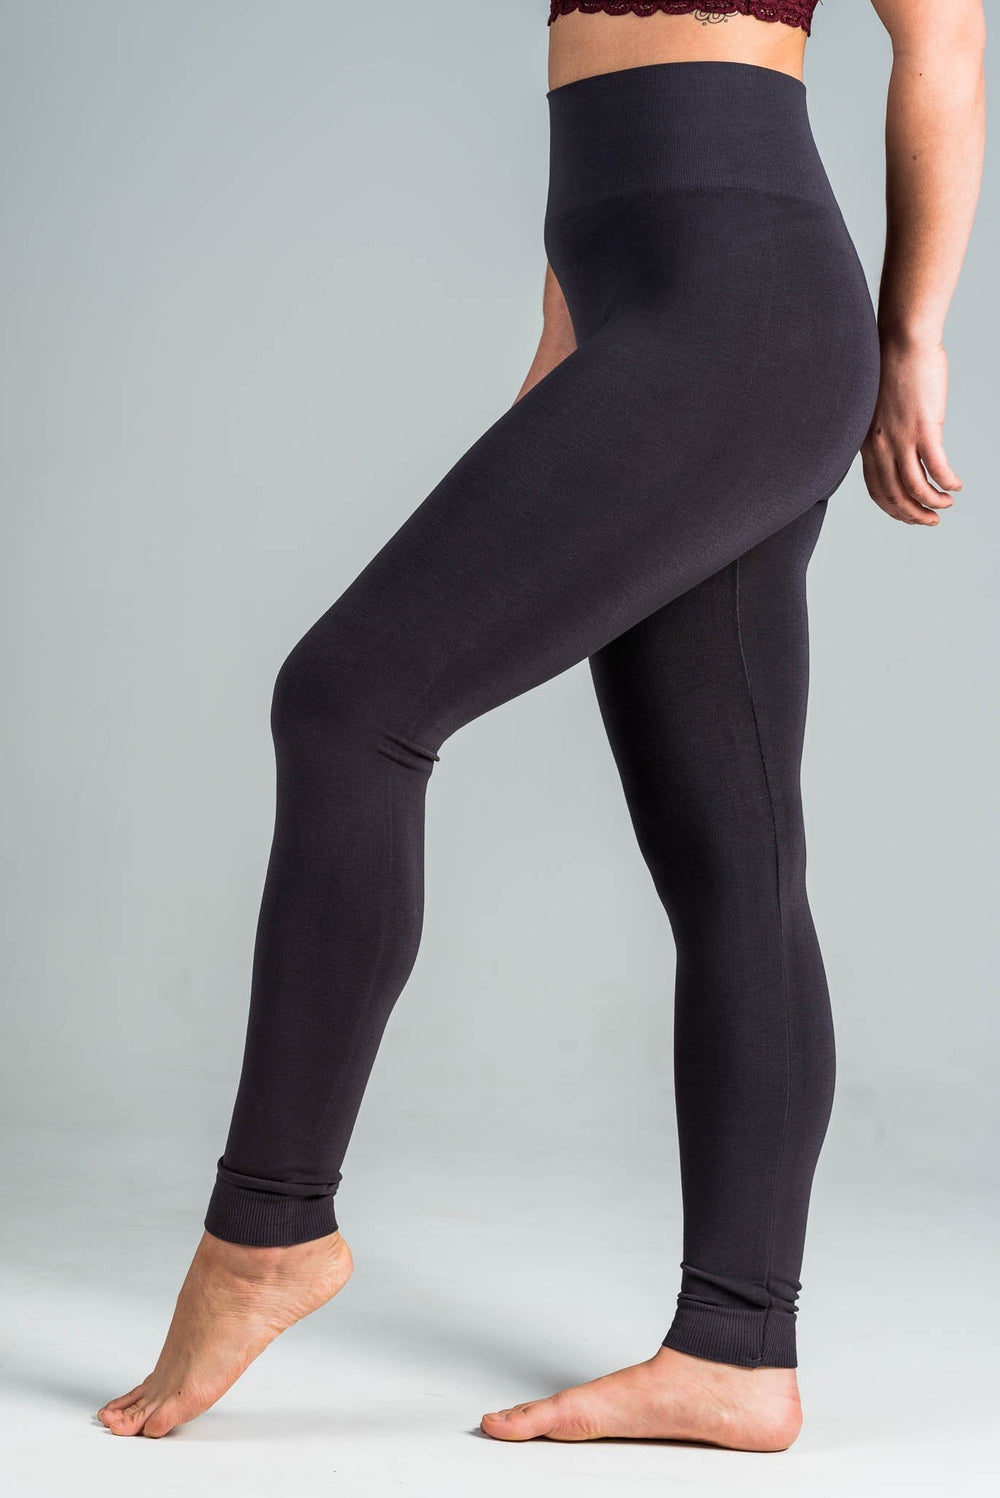 DEVOPS 2 Pack Women's High Waisted Ultra Soft Basic Leggings (Medium,  Black/Black)